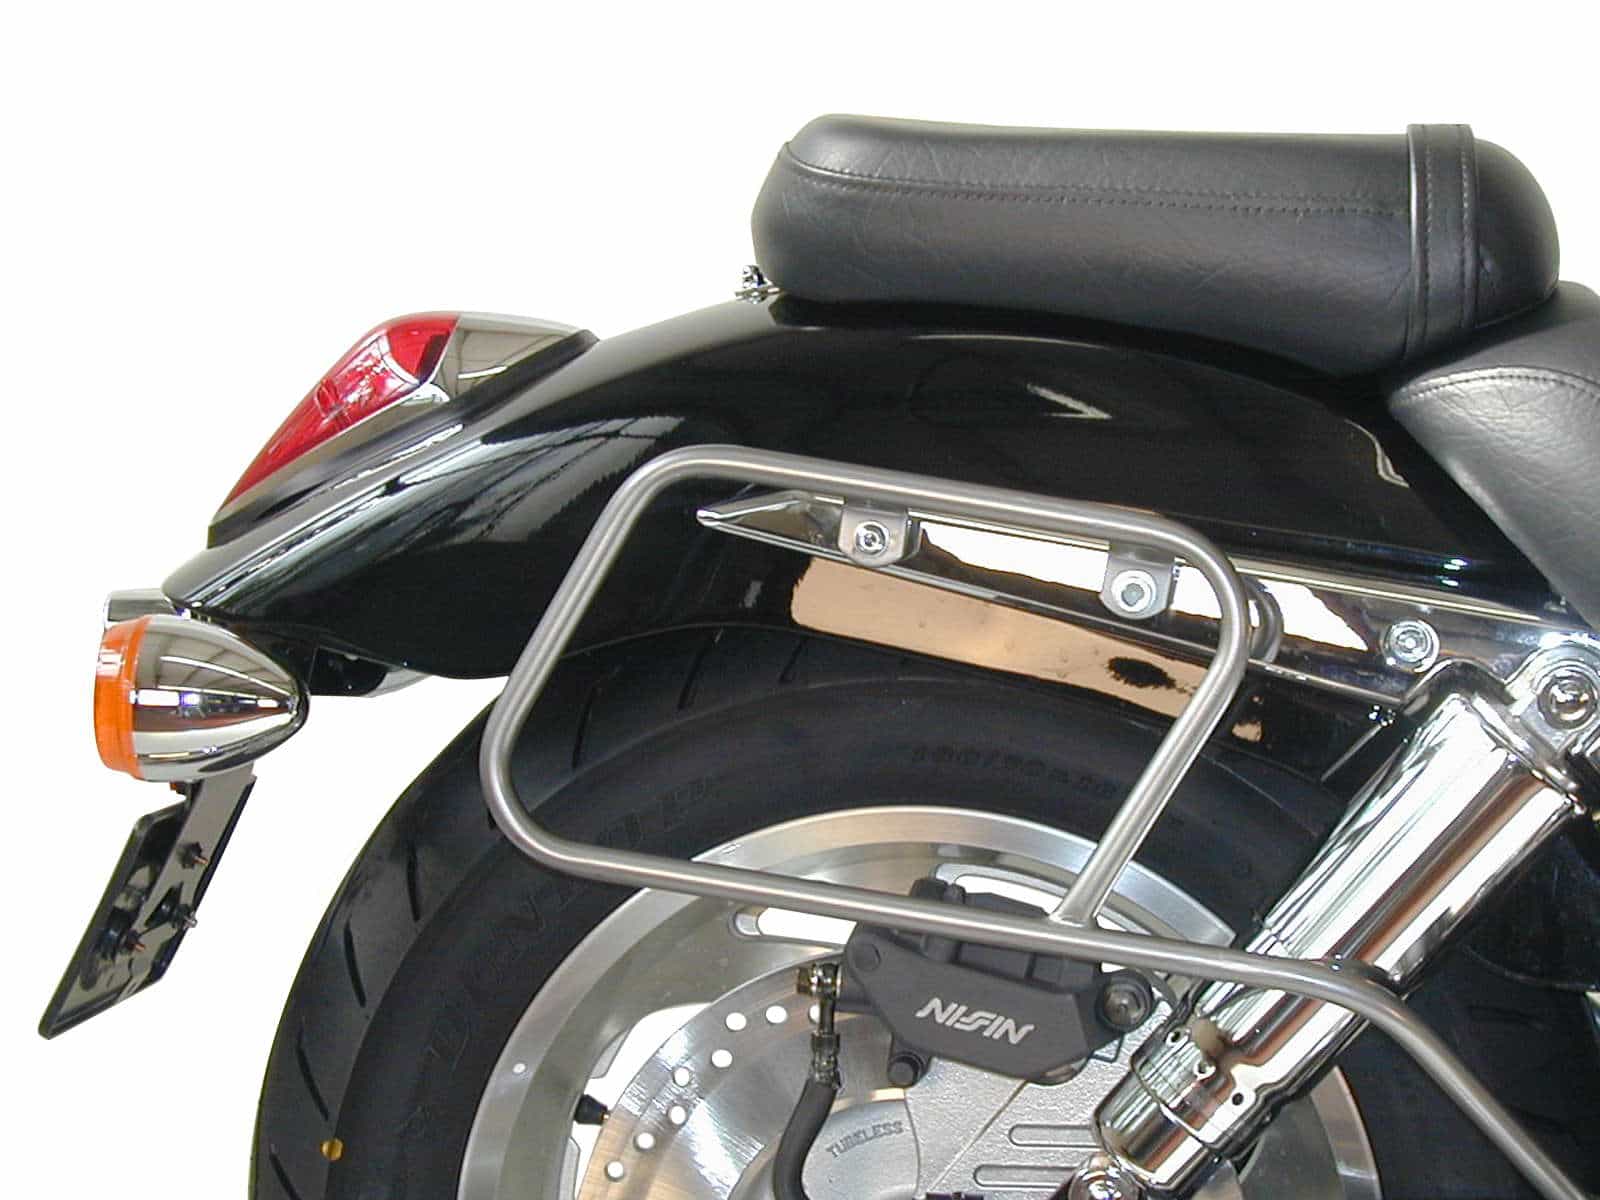 Leather bag holder tube-type - chrome for Honda VTX 1800 (2001-2006)